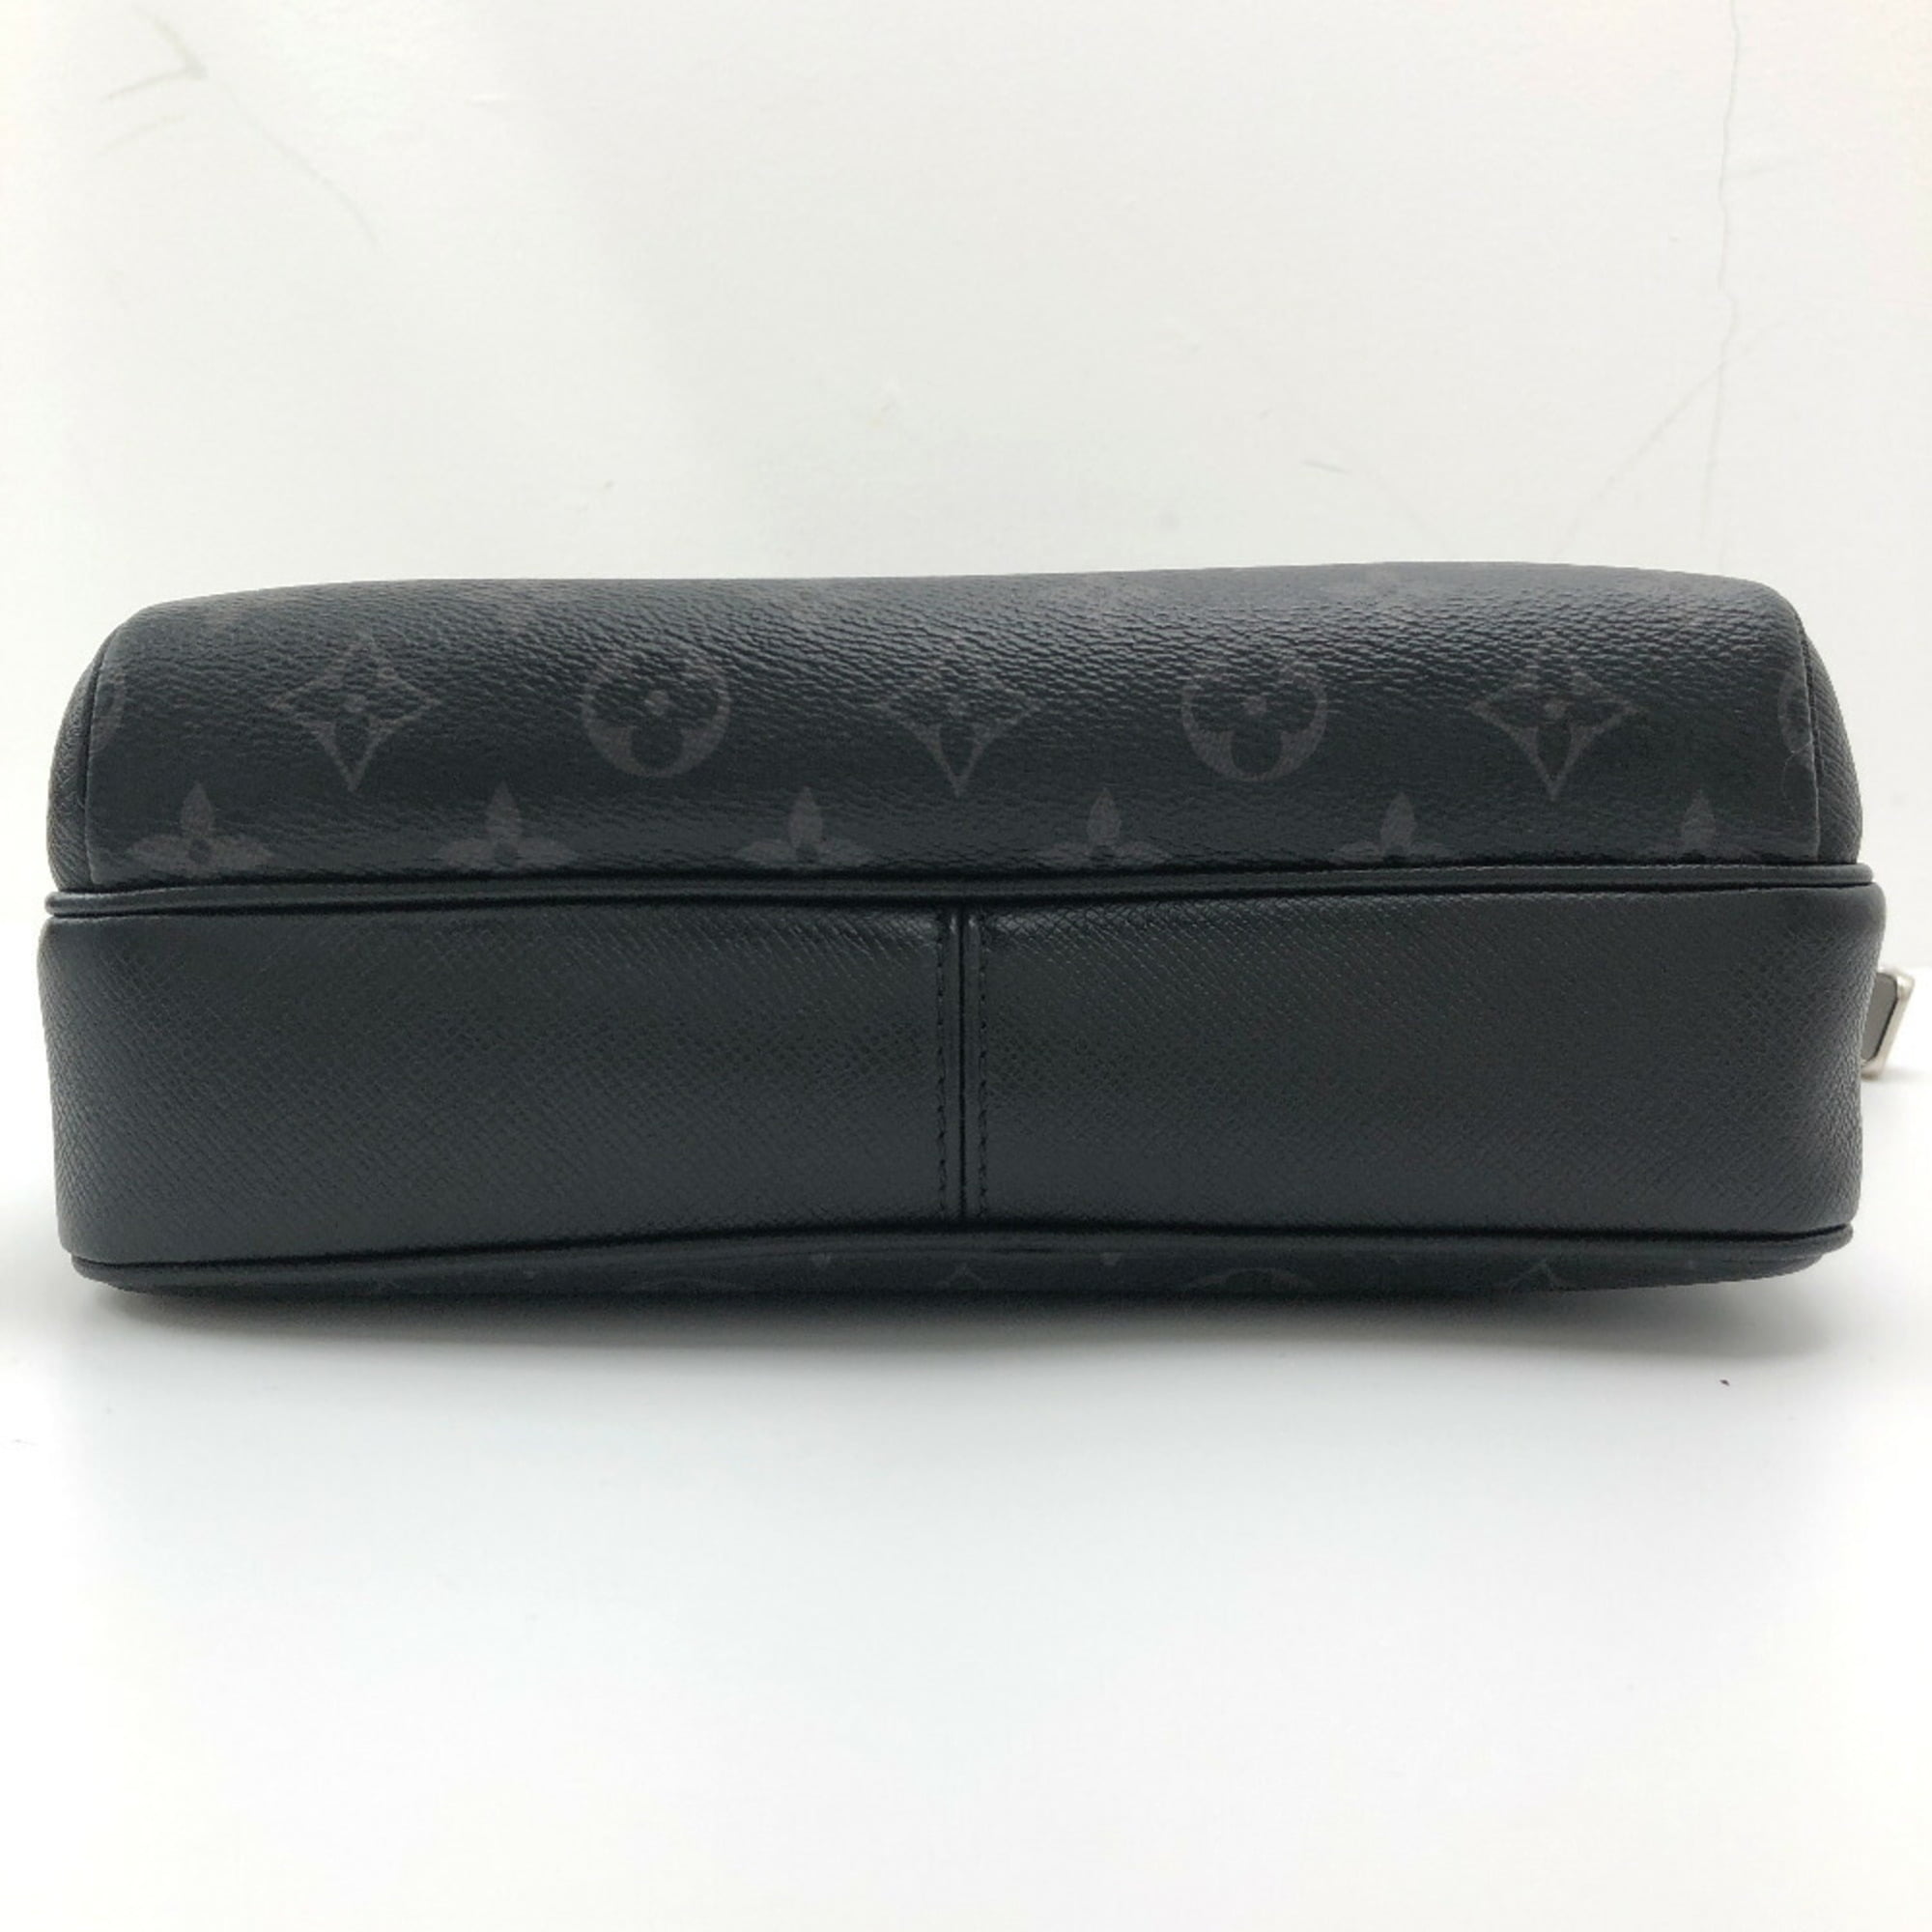 Cloth bag Louis Vuitton Black in Cloth - 29362023